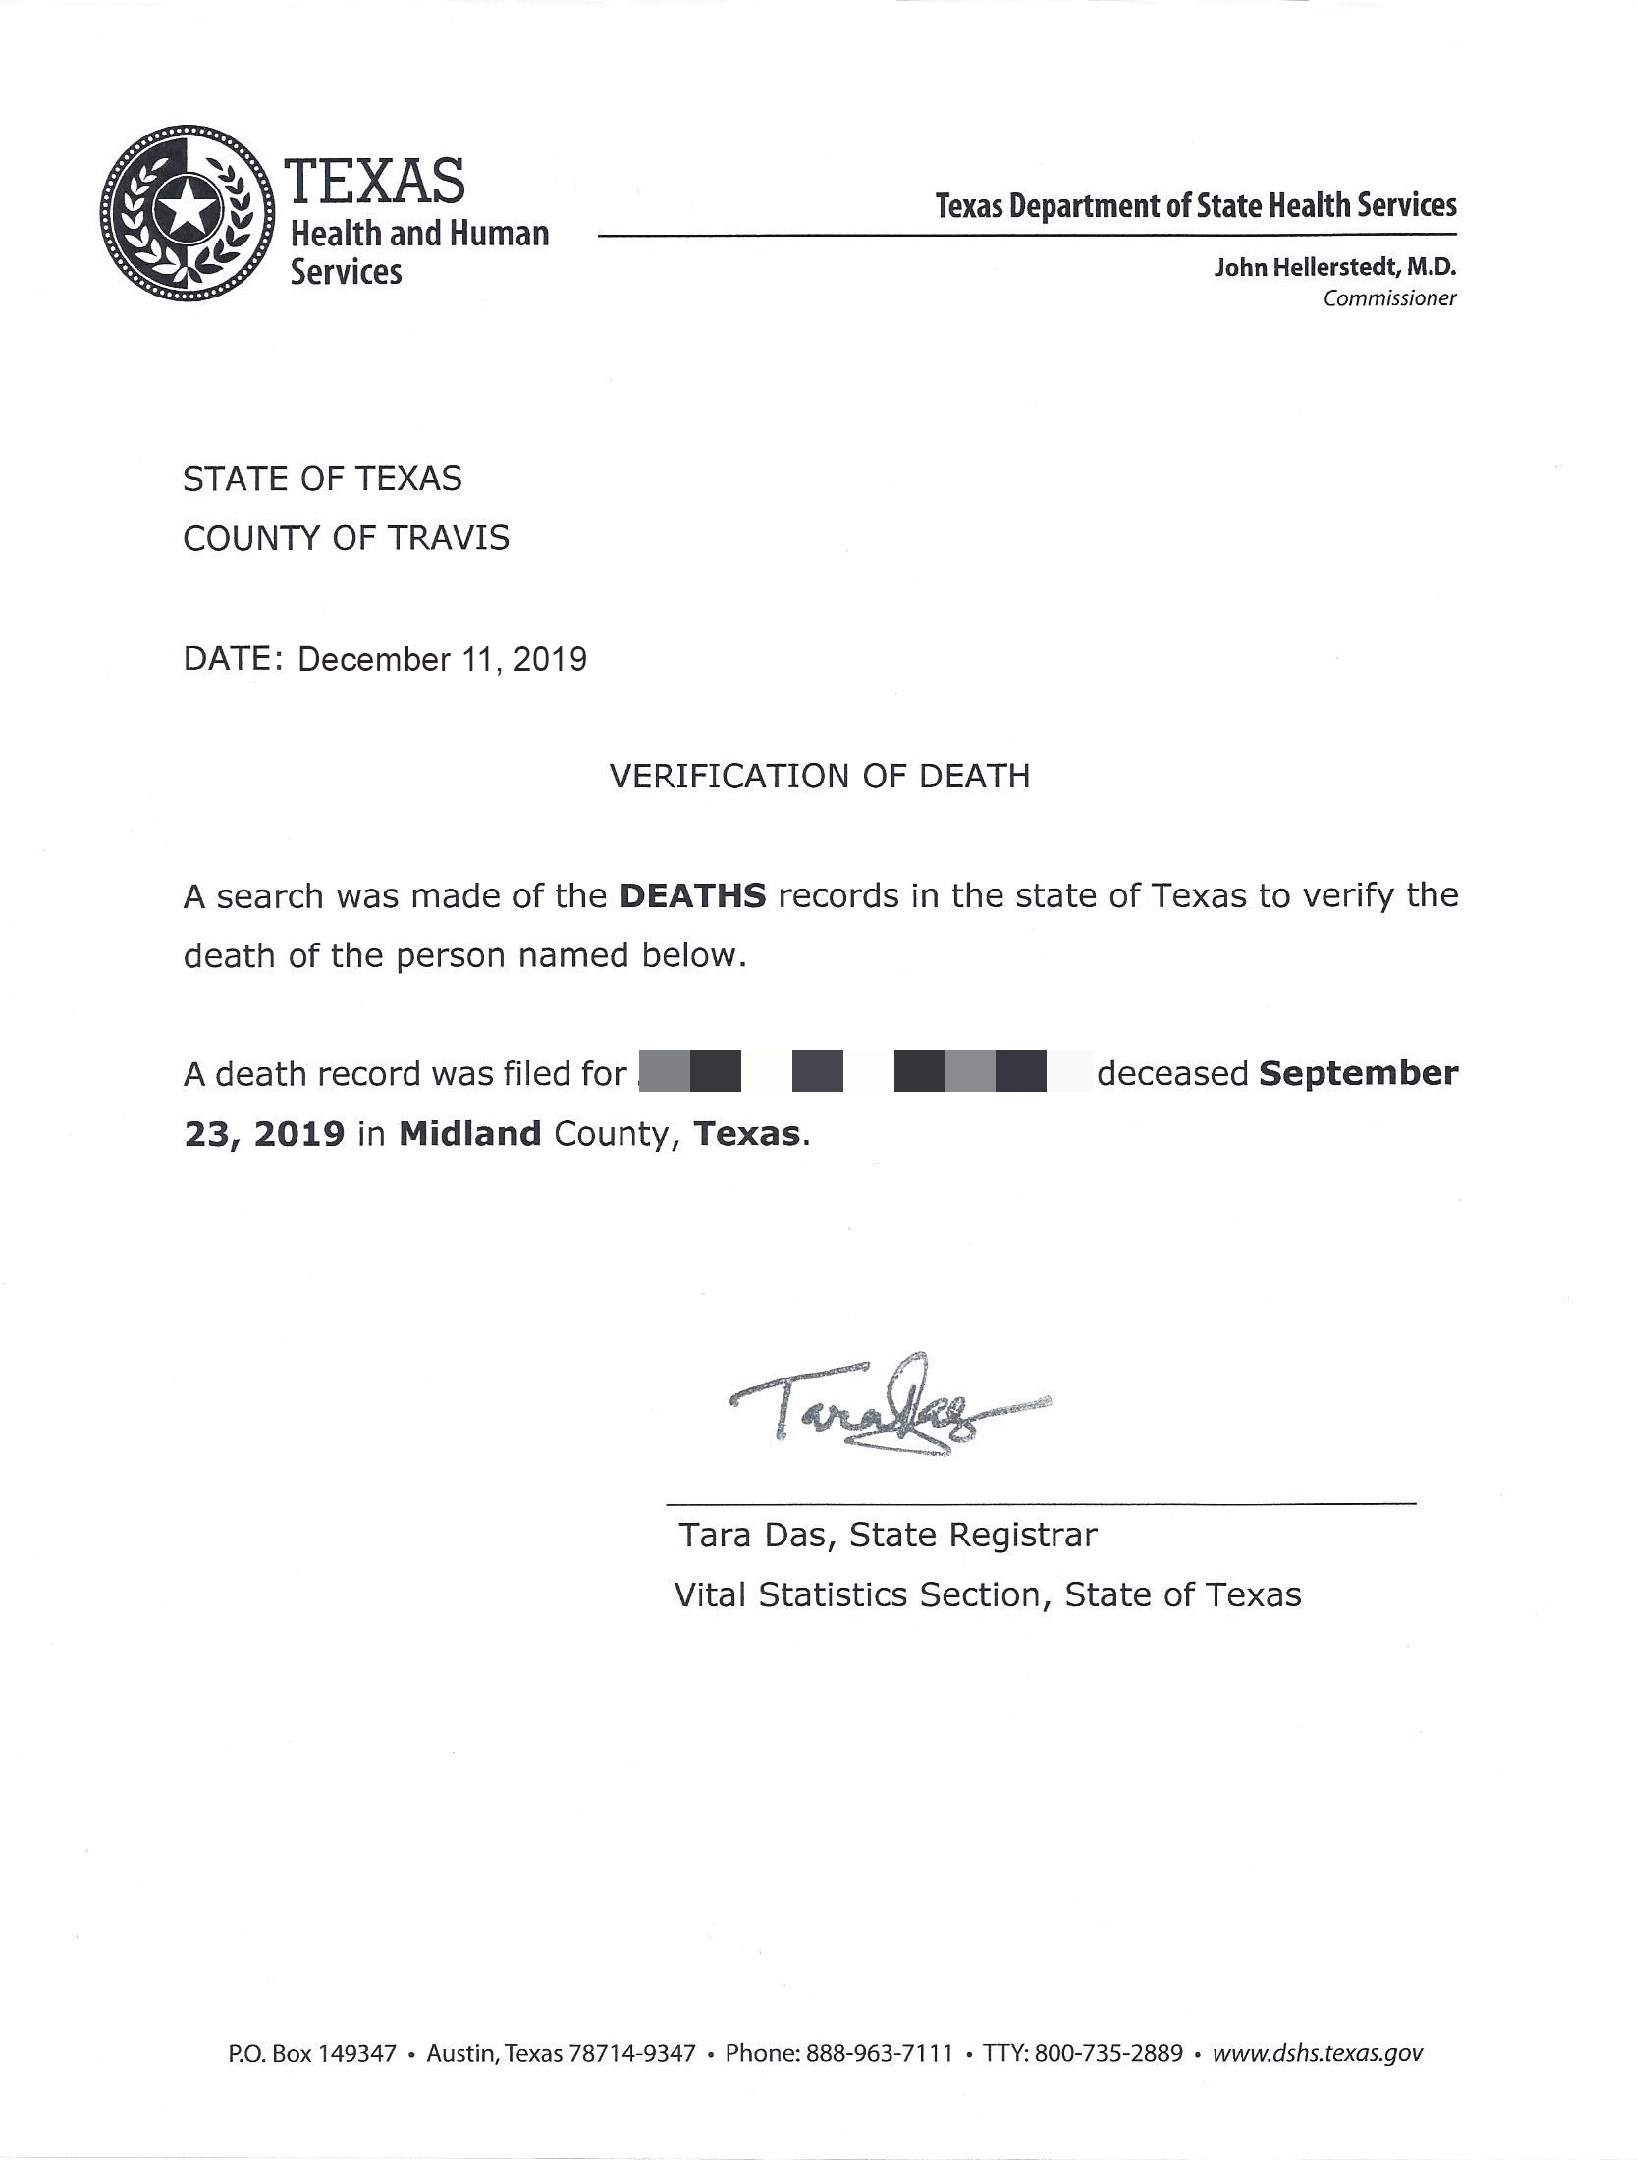 Texas Death Verification Letter Frontside